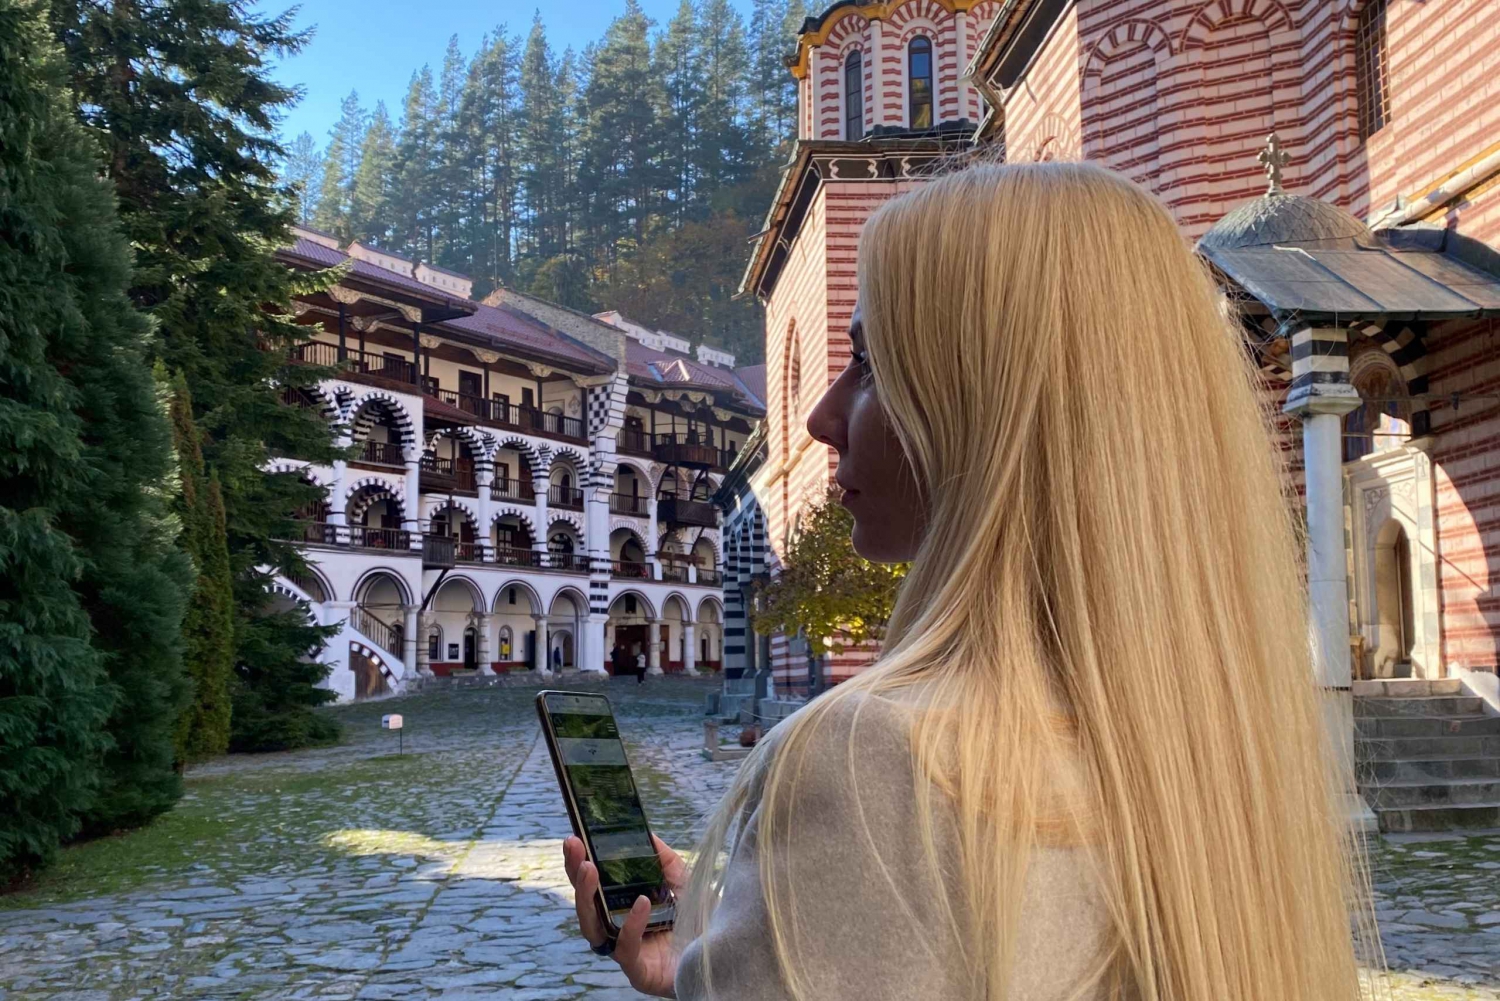 Rila-klosteret: Klosterkompleks og museer Audioguide for smarttelefon